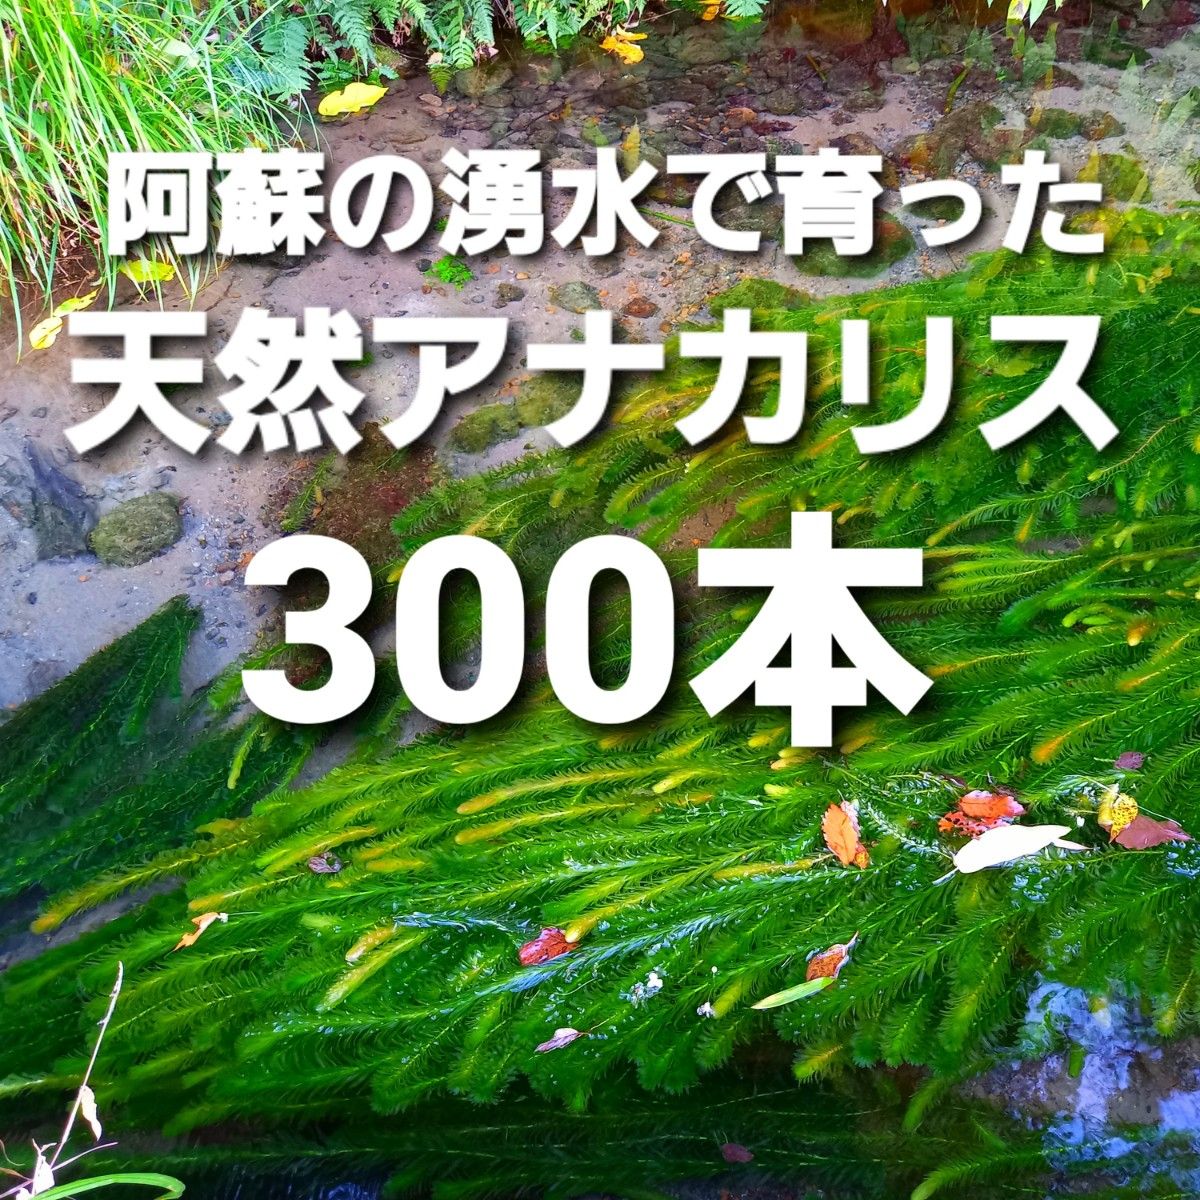 300本以上 阿蘇の湧水で育った水草 天然アナカリス